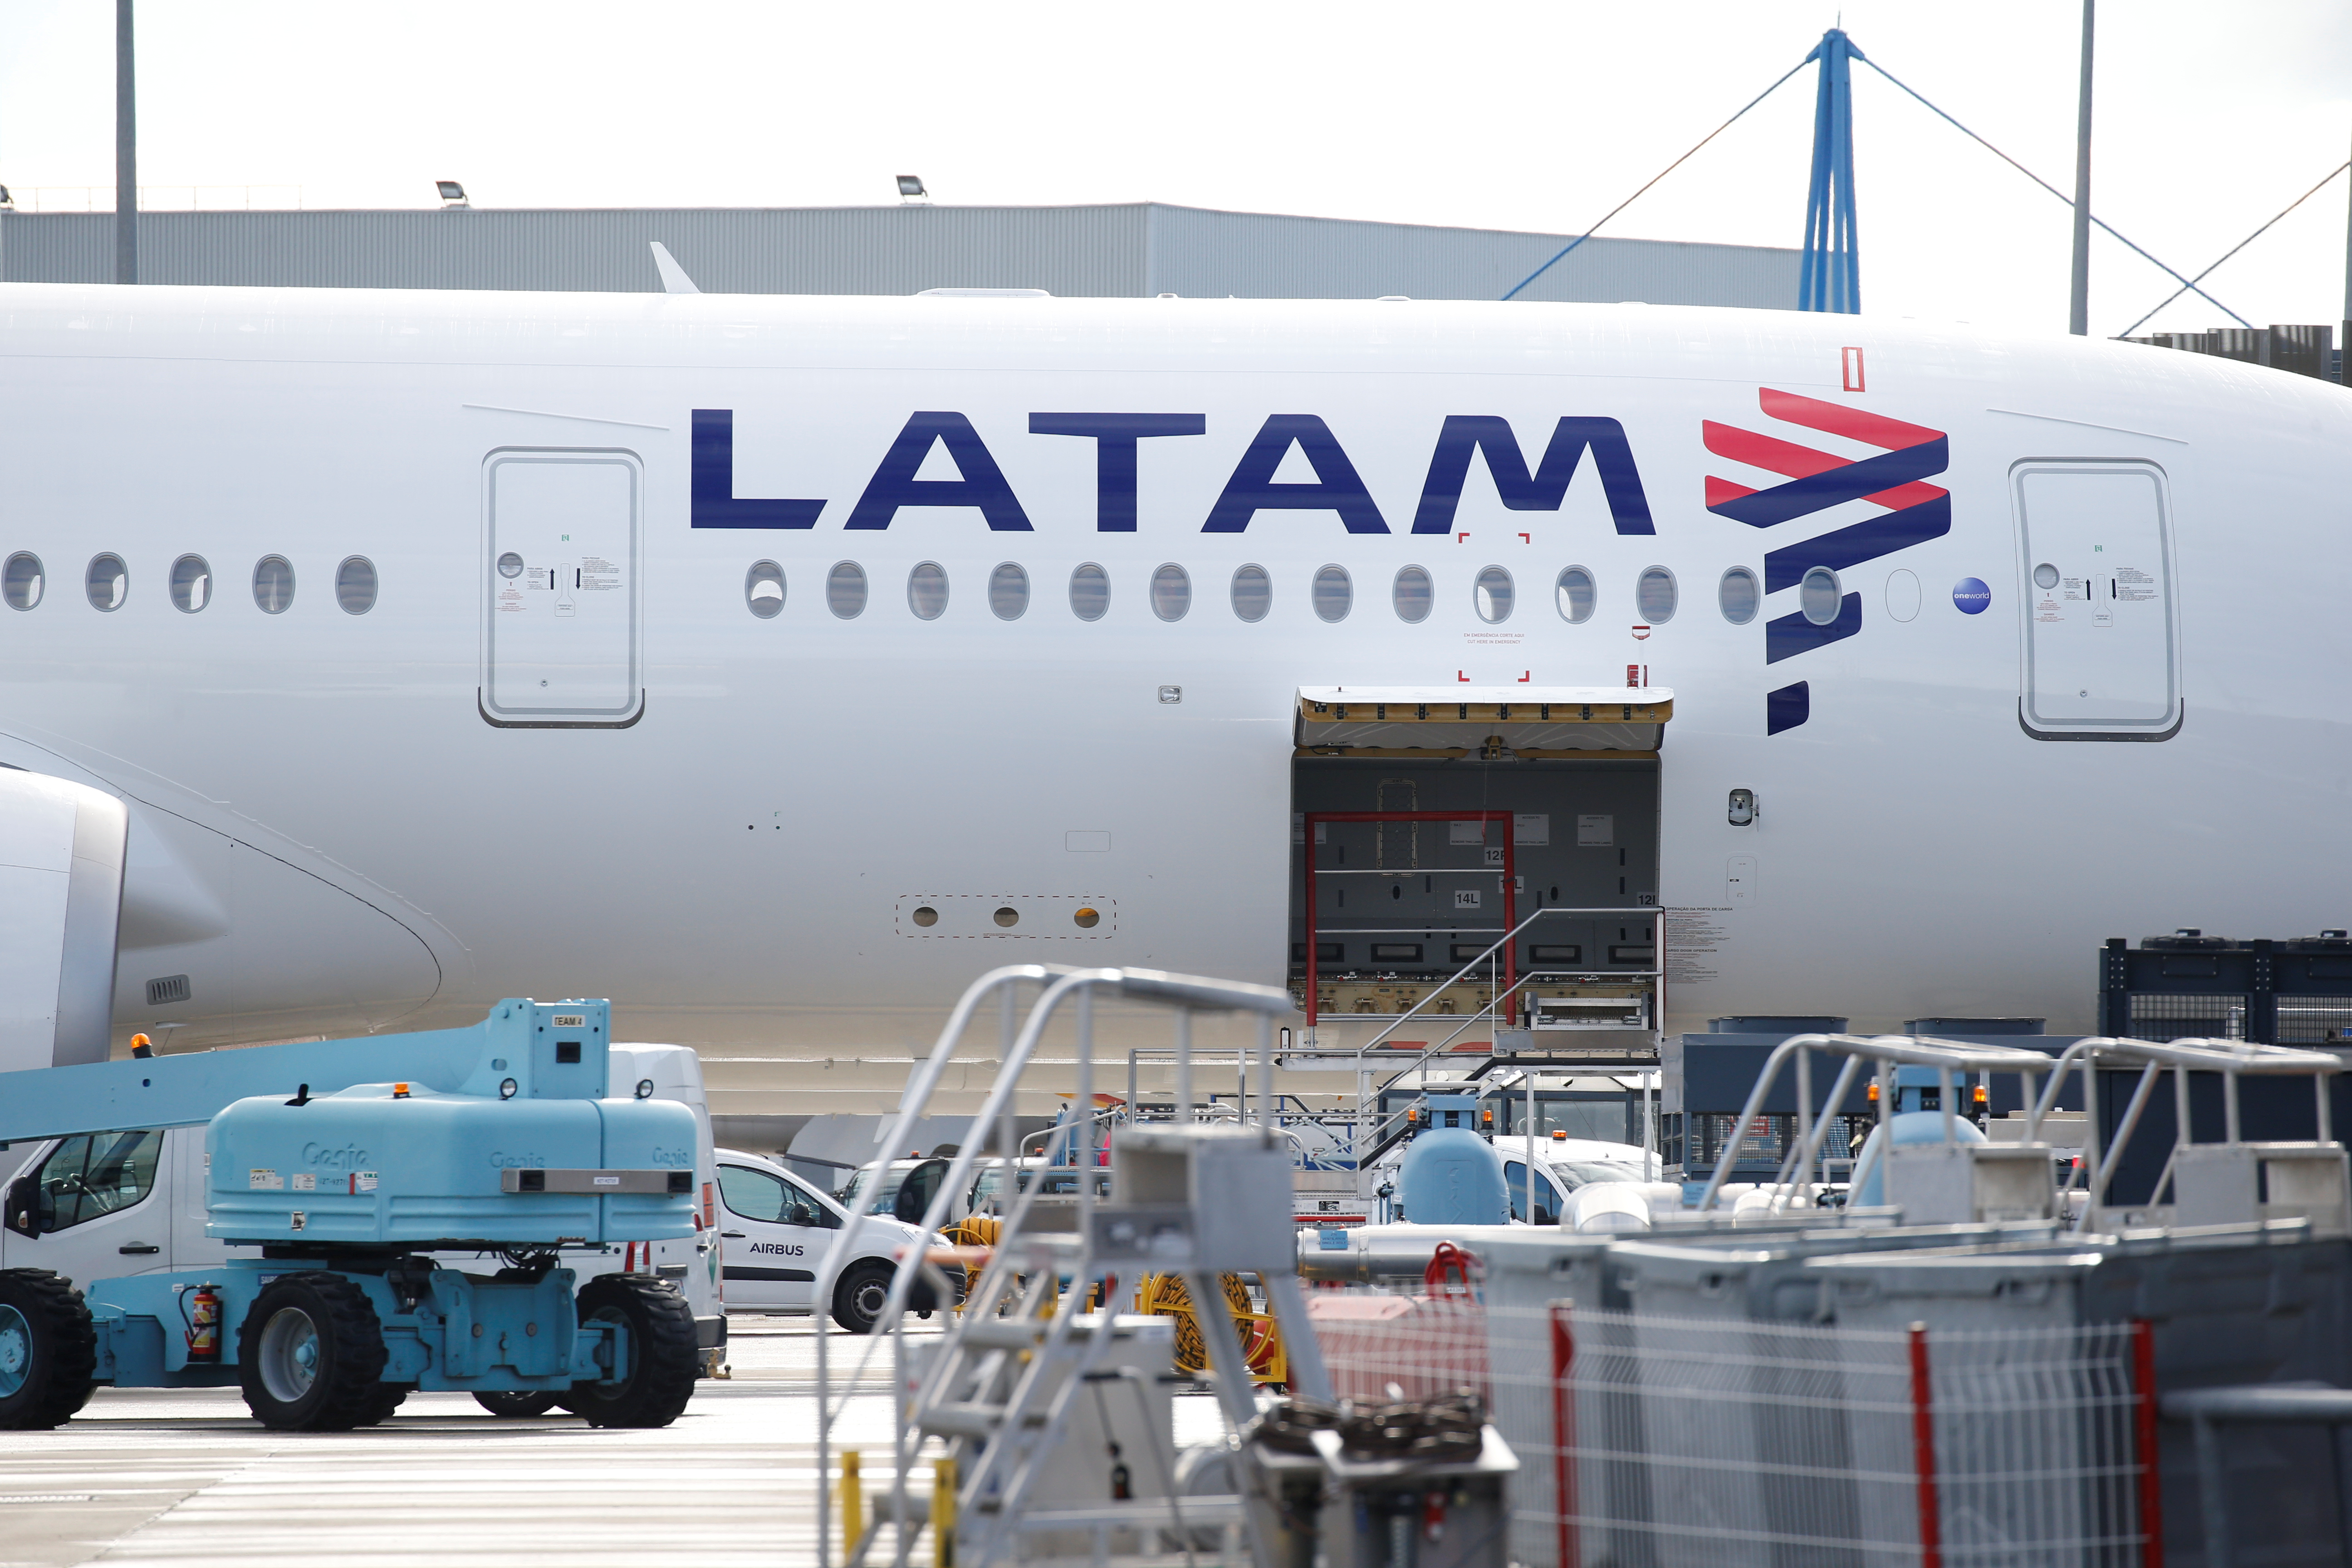 Trabajadores de la aerolínea Latam en paro por mejoras laborales